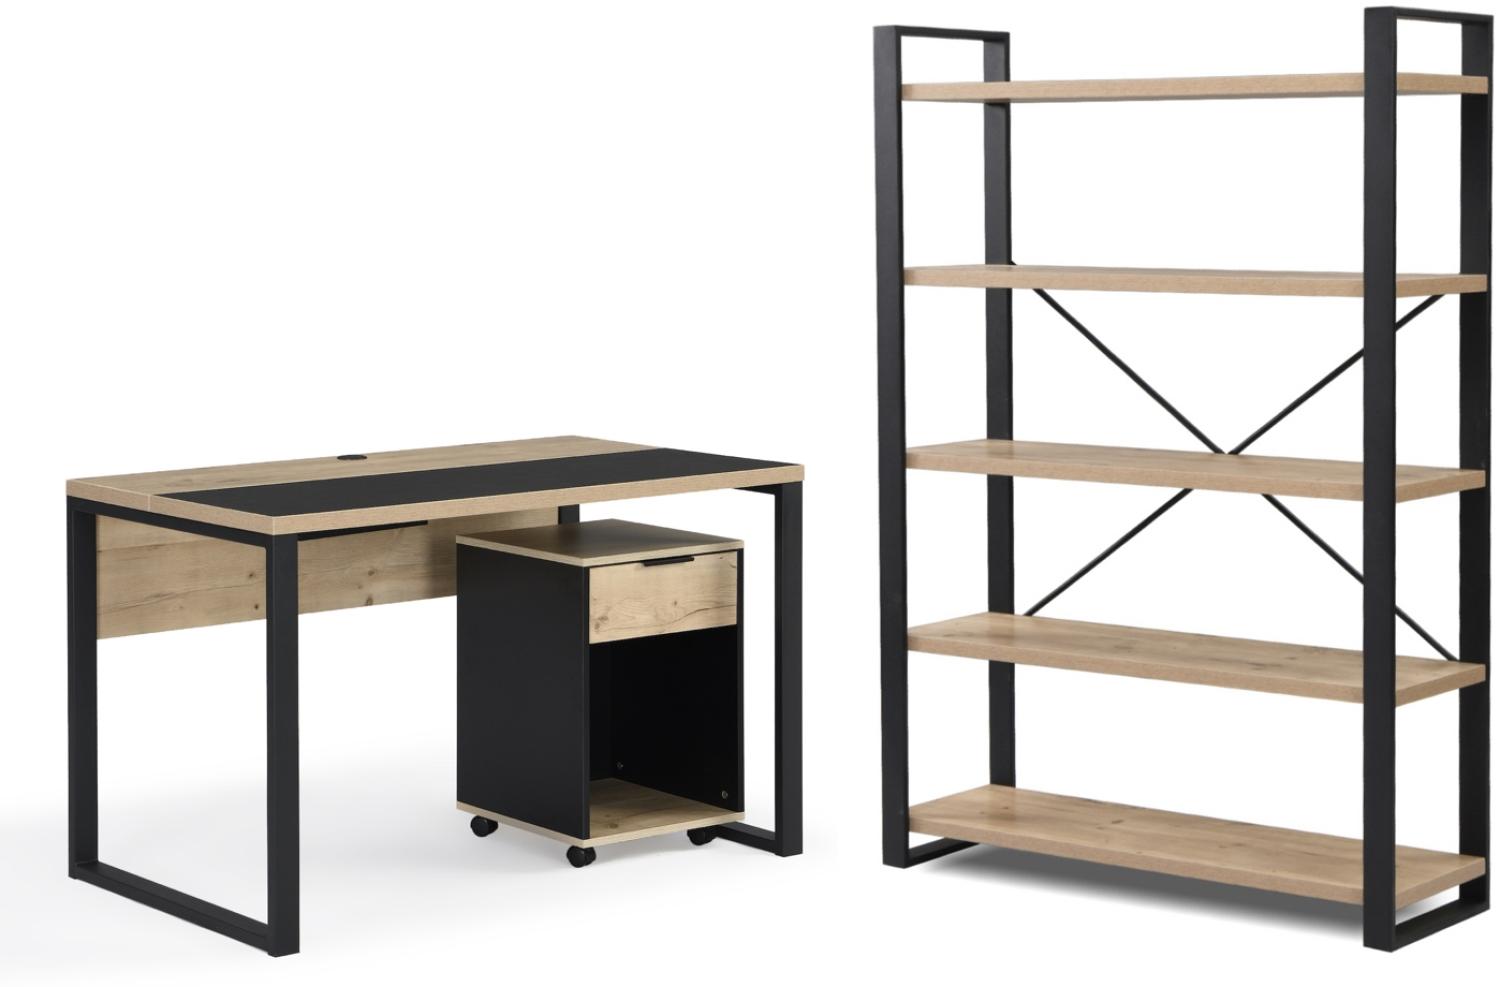 B&D home Büromöbel Komplettset | 3-teiliges Set mit Schreibtisch Rollcontainer Regal für Jugendzimmer, Büro | modern | Sandeiche Optik, 120cm Bild 1